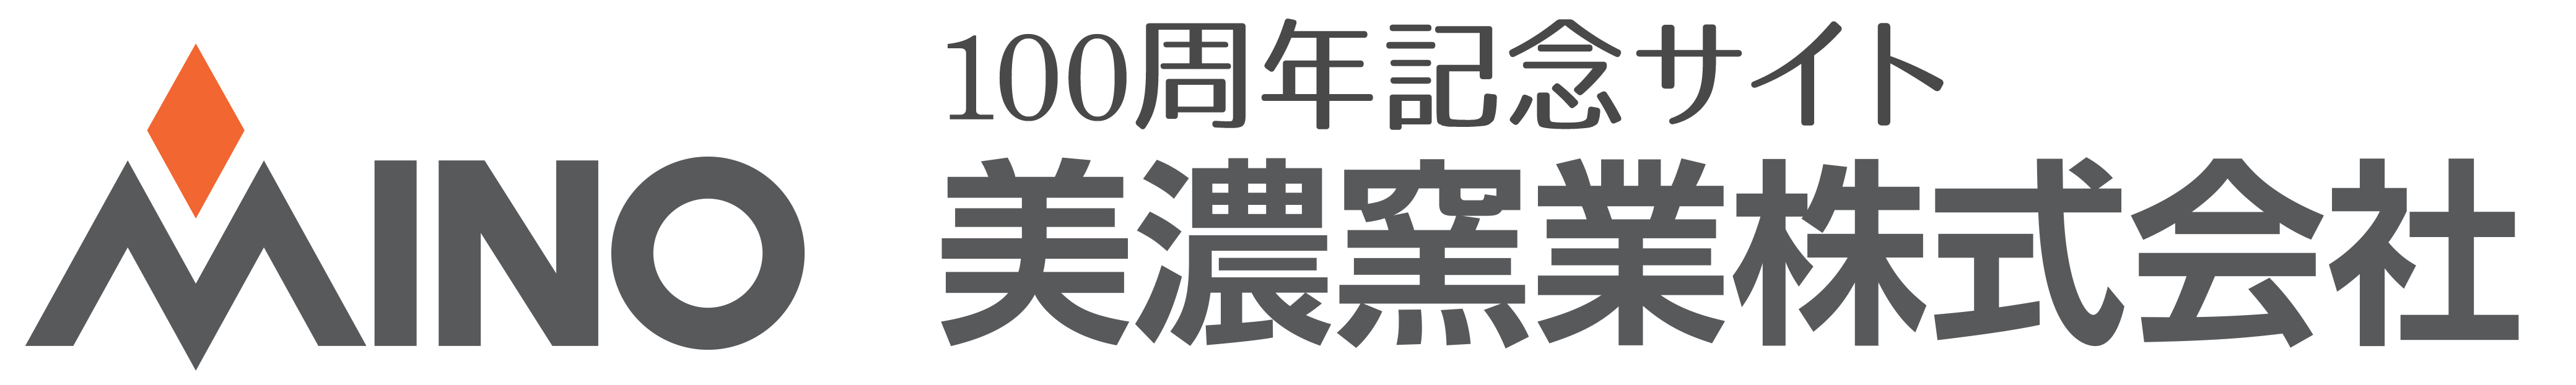 美濃窯業株式会社100年記念ホームページ